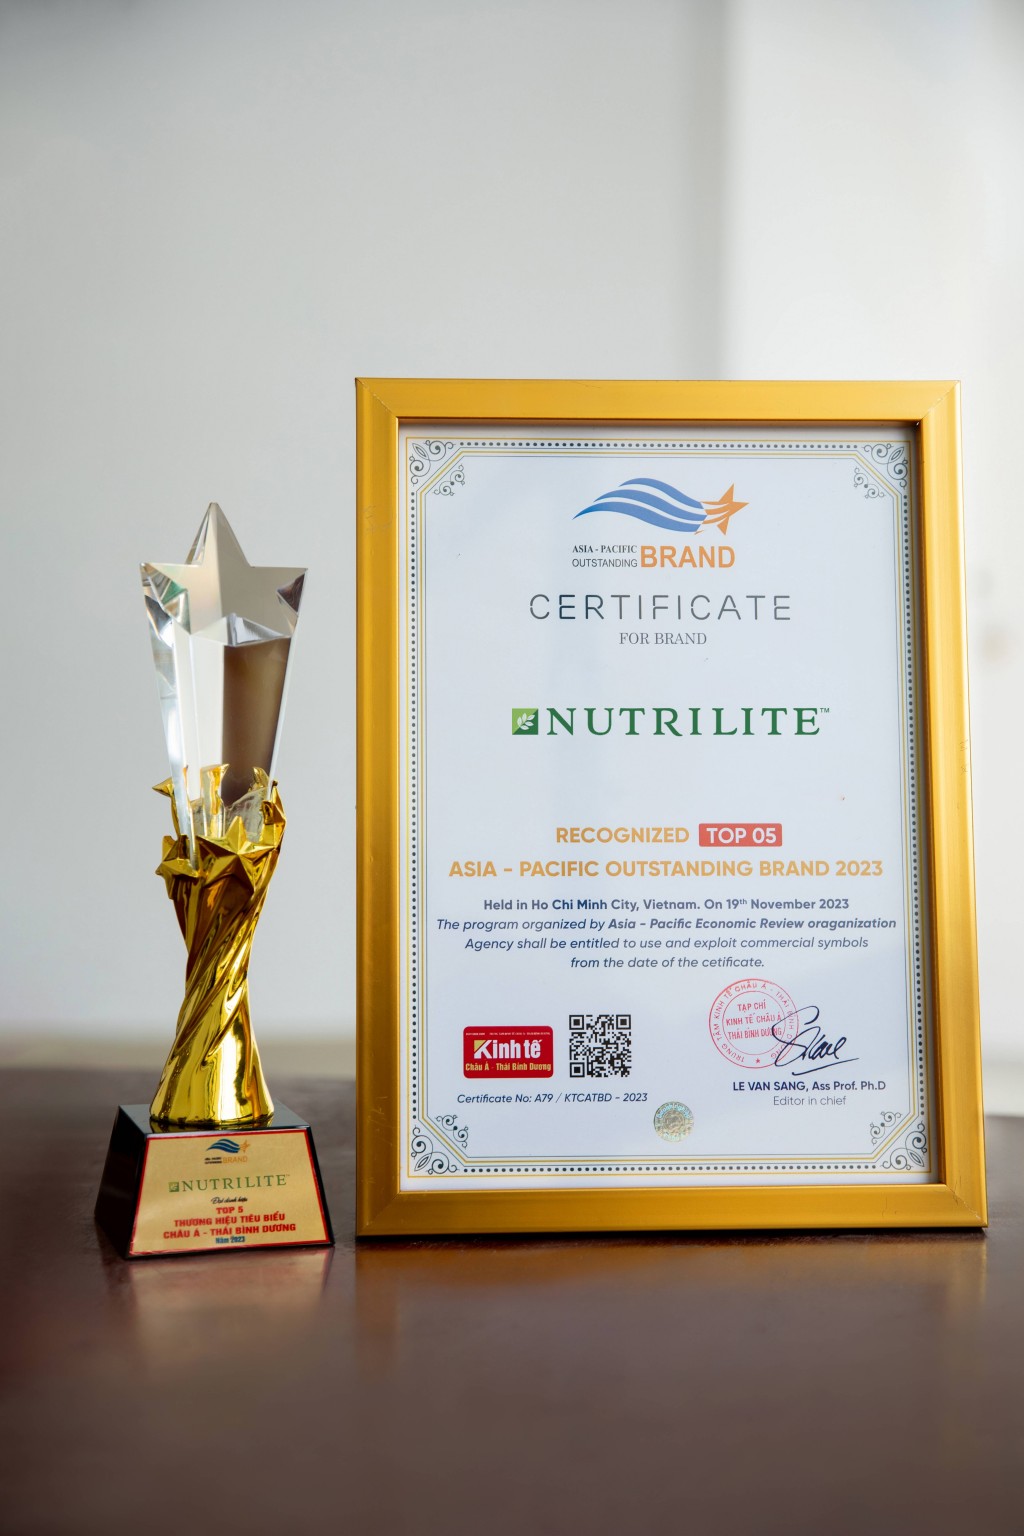 Giải thưởng Top 5 Thương hiệu Tiêu biểu châu Á - Thái Bình Dương 2023 tôn vinh nhãn hiệu Nutrilite (thuộc Amway)